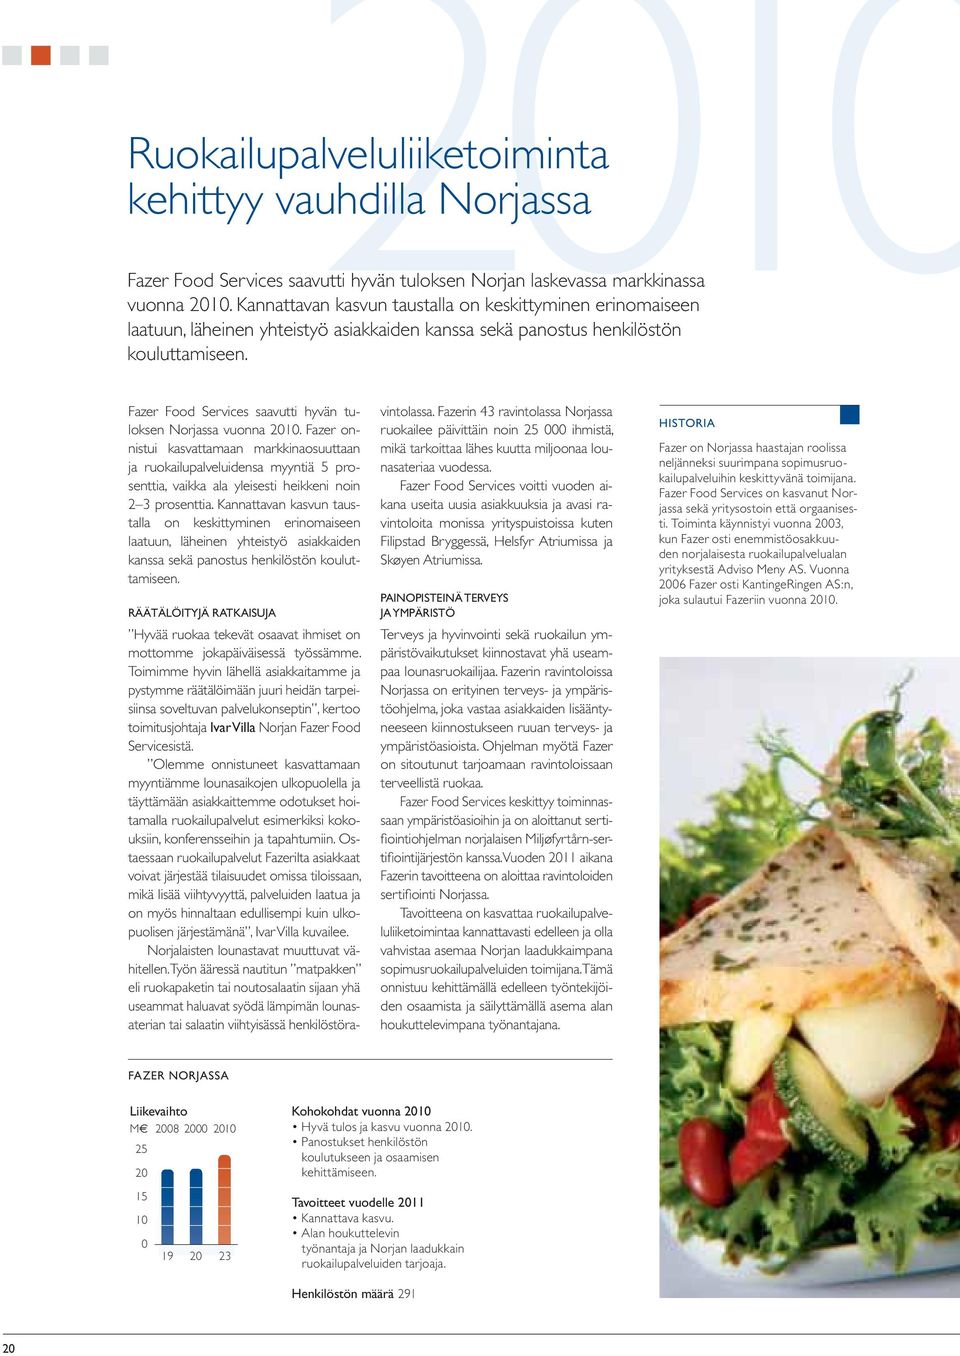 Fazer Food Services saavutti hyvän tuloksen Norjassa vuonna 21.